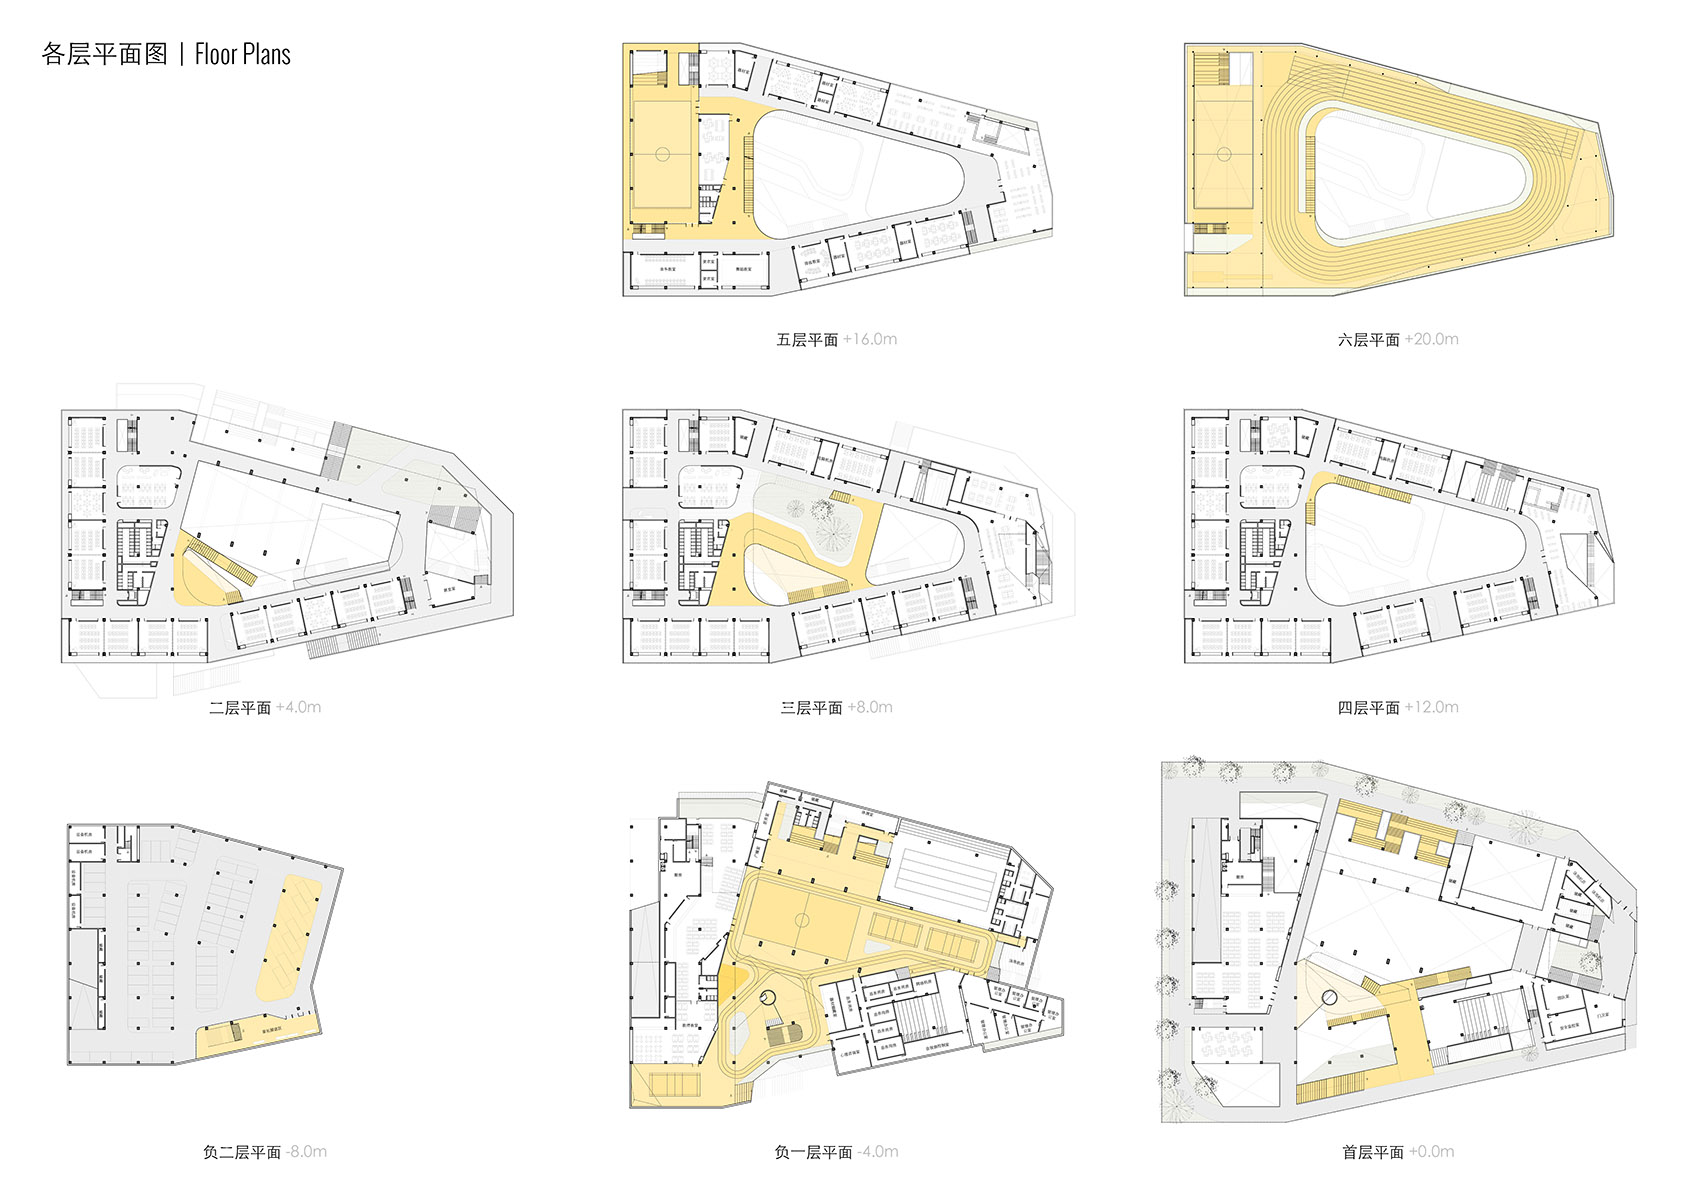 重叠校园：莲花小学校园设计，深圳/高密度垂直分区式校园-81